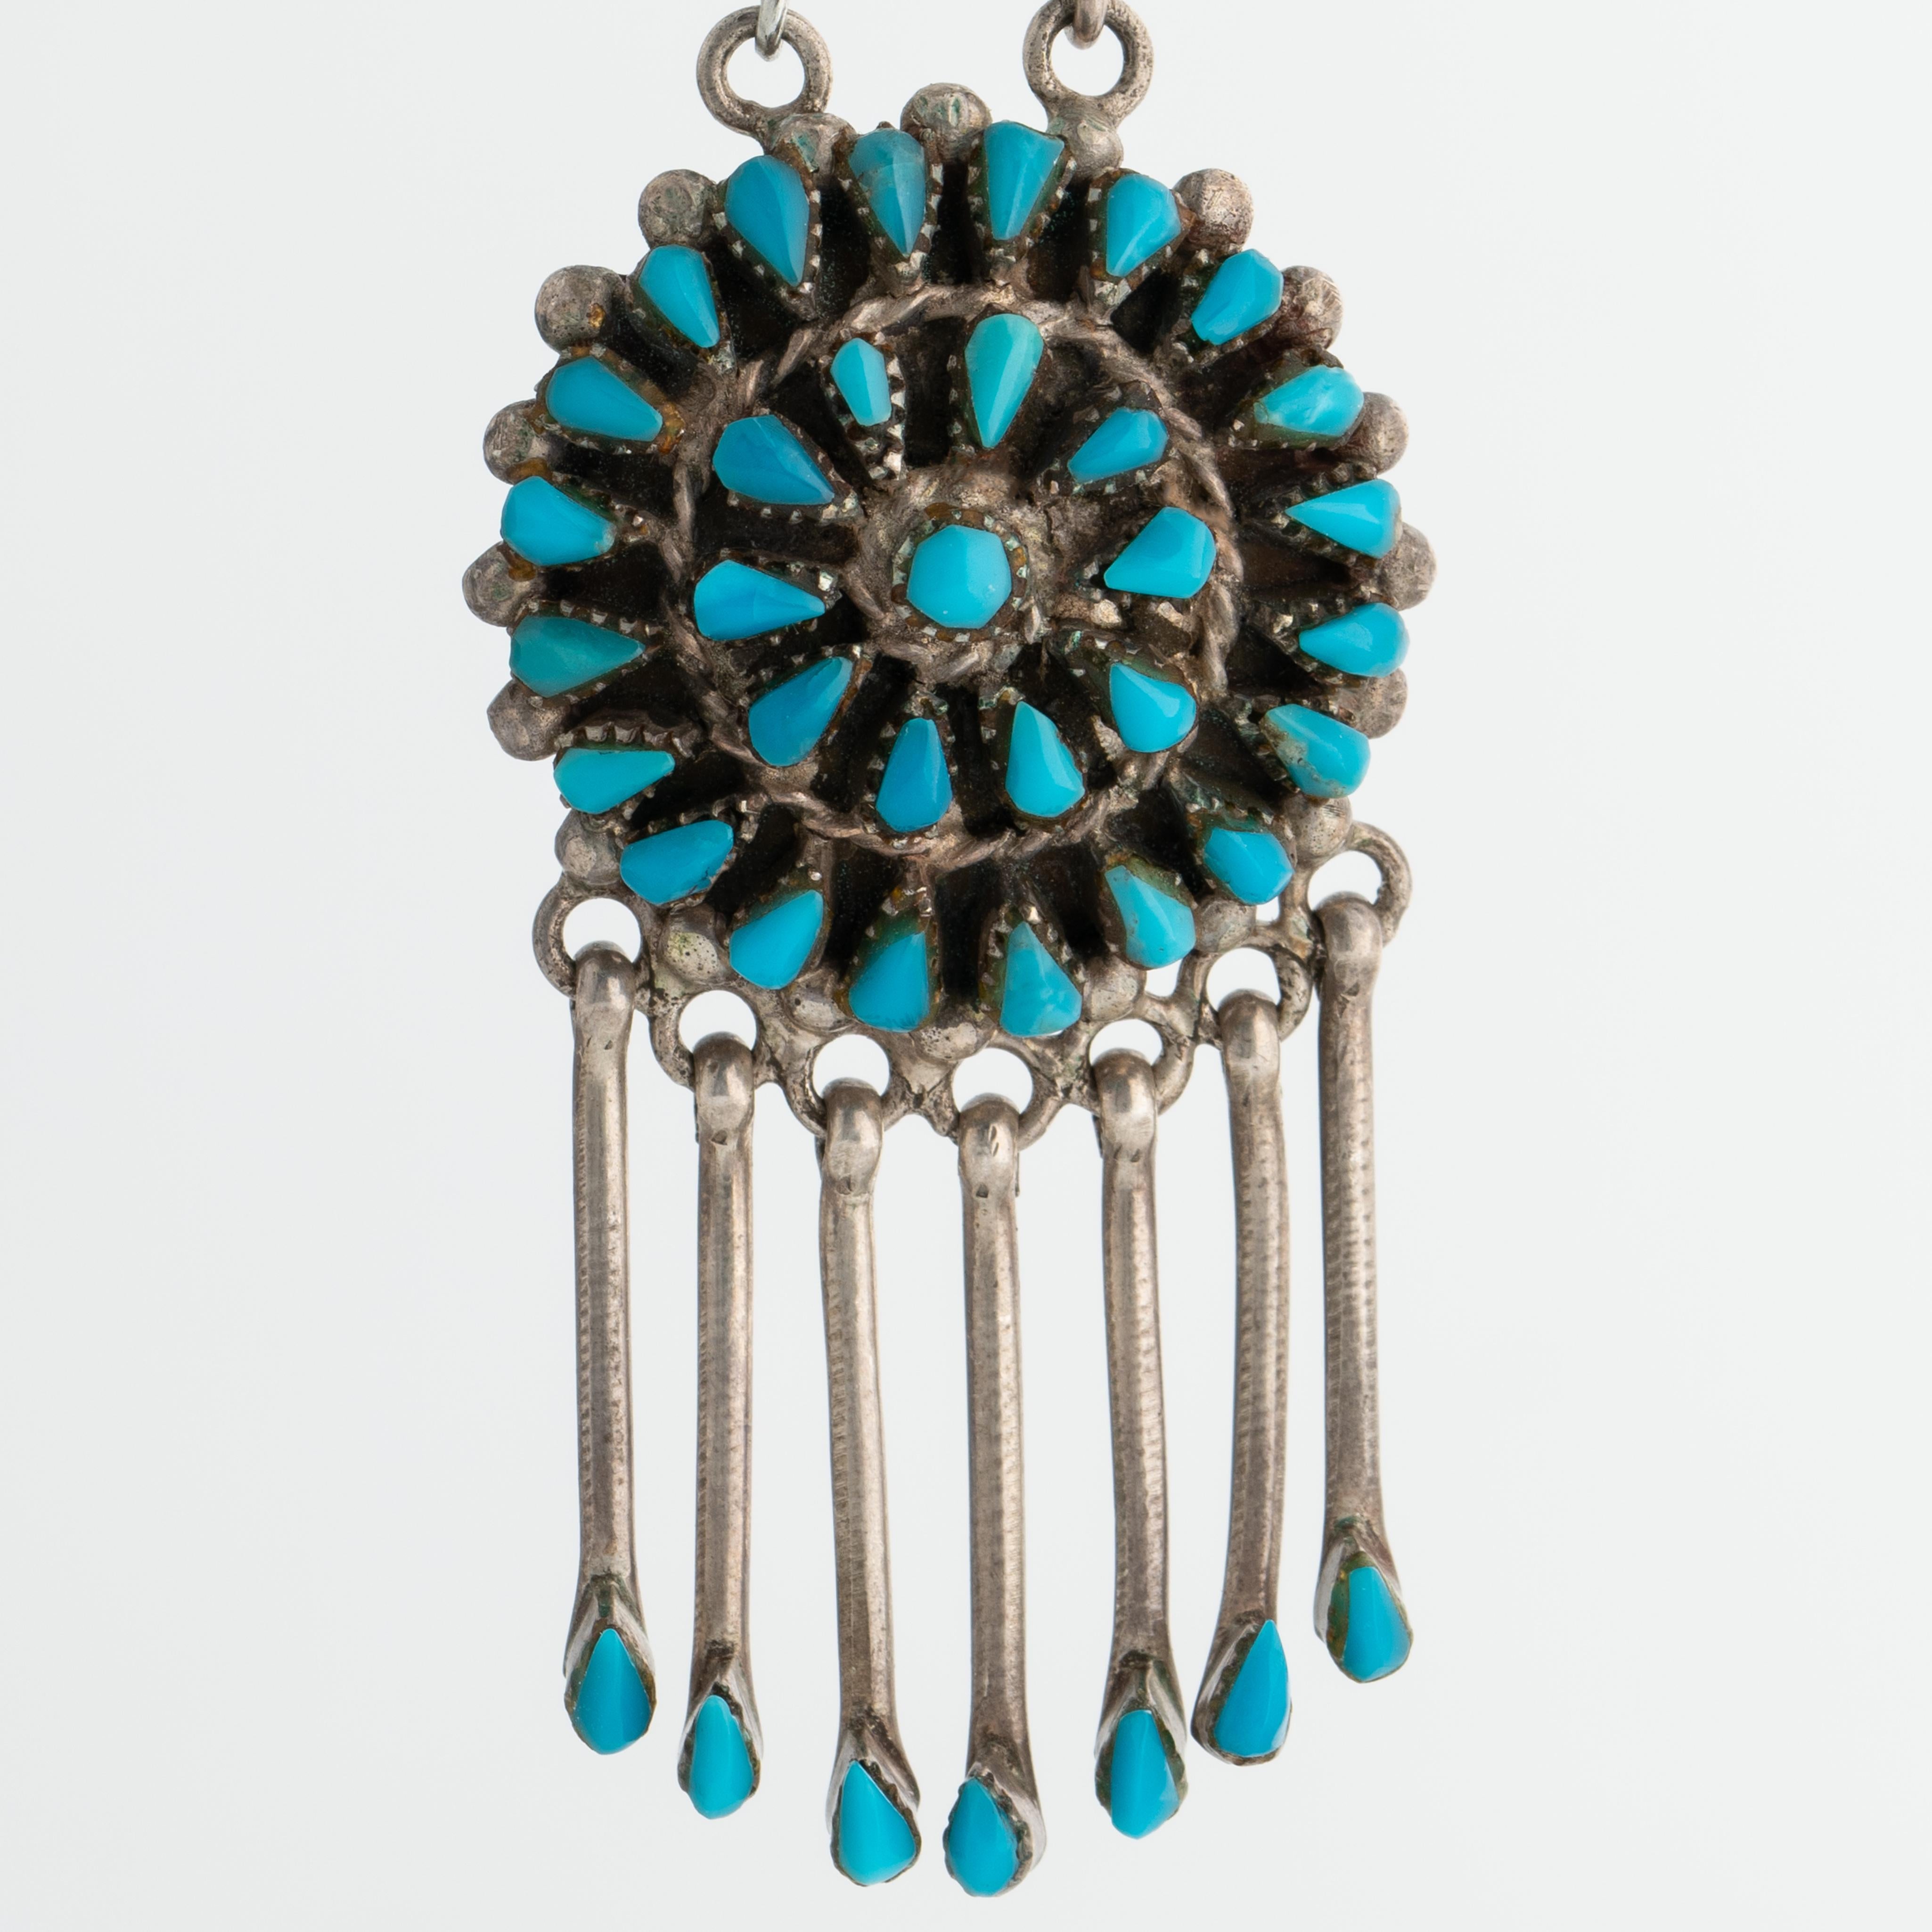 vintage native american earrings